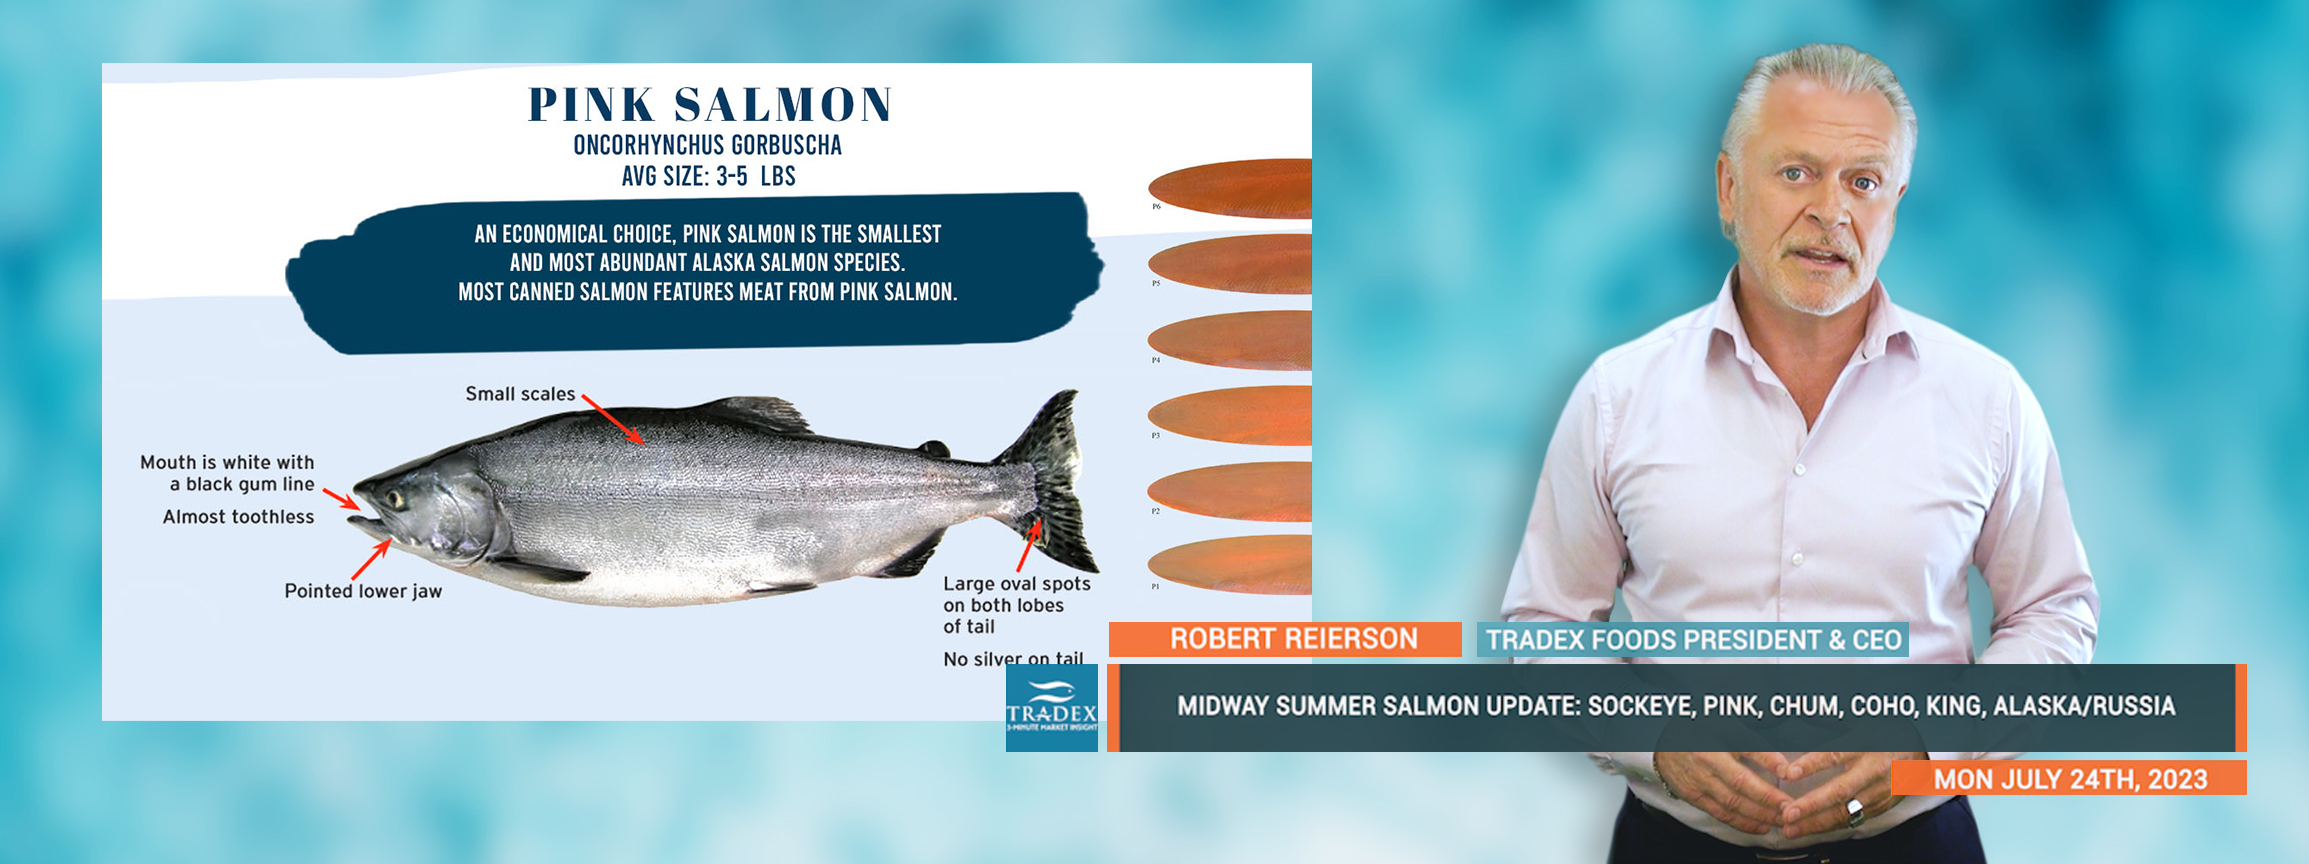 Midway Summer Salmon Update